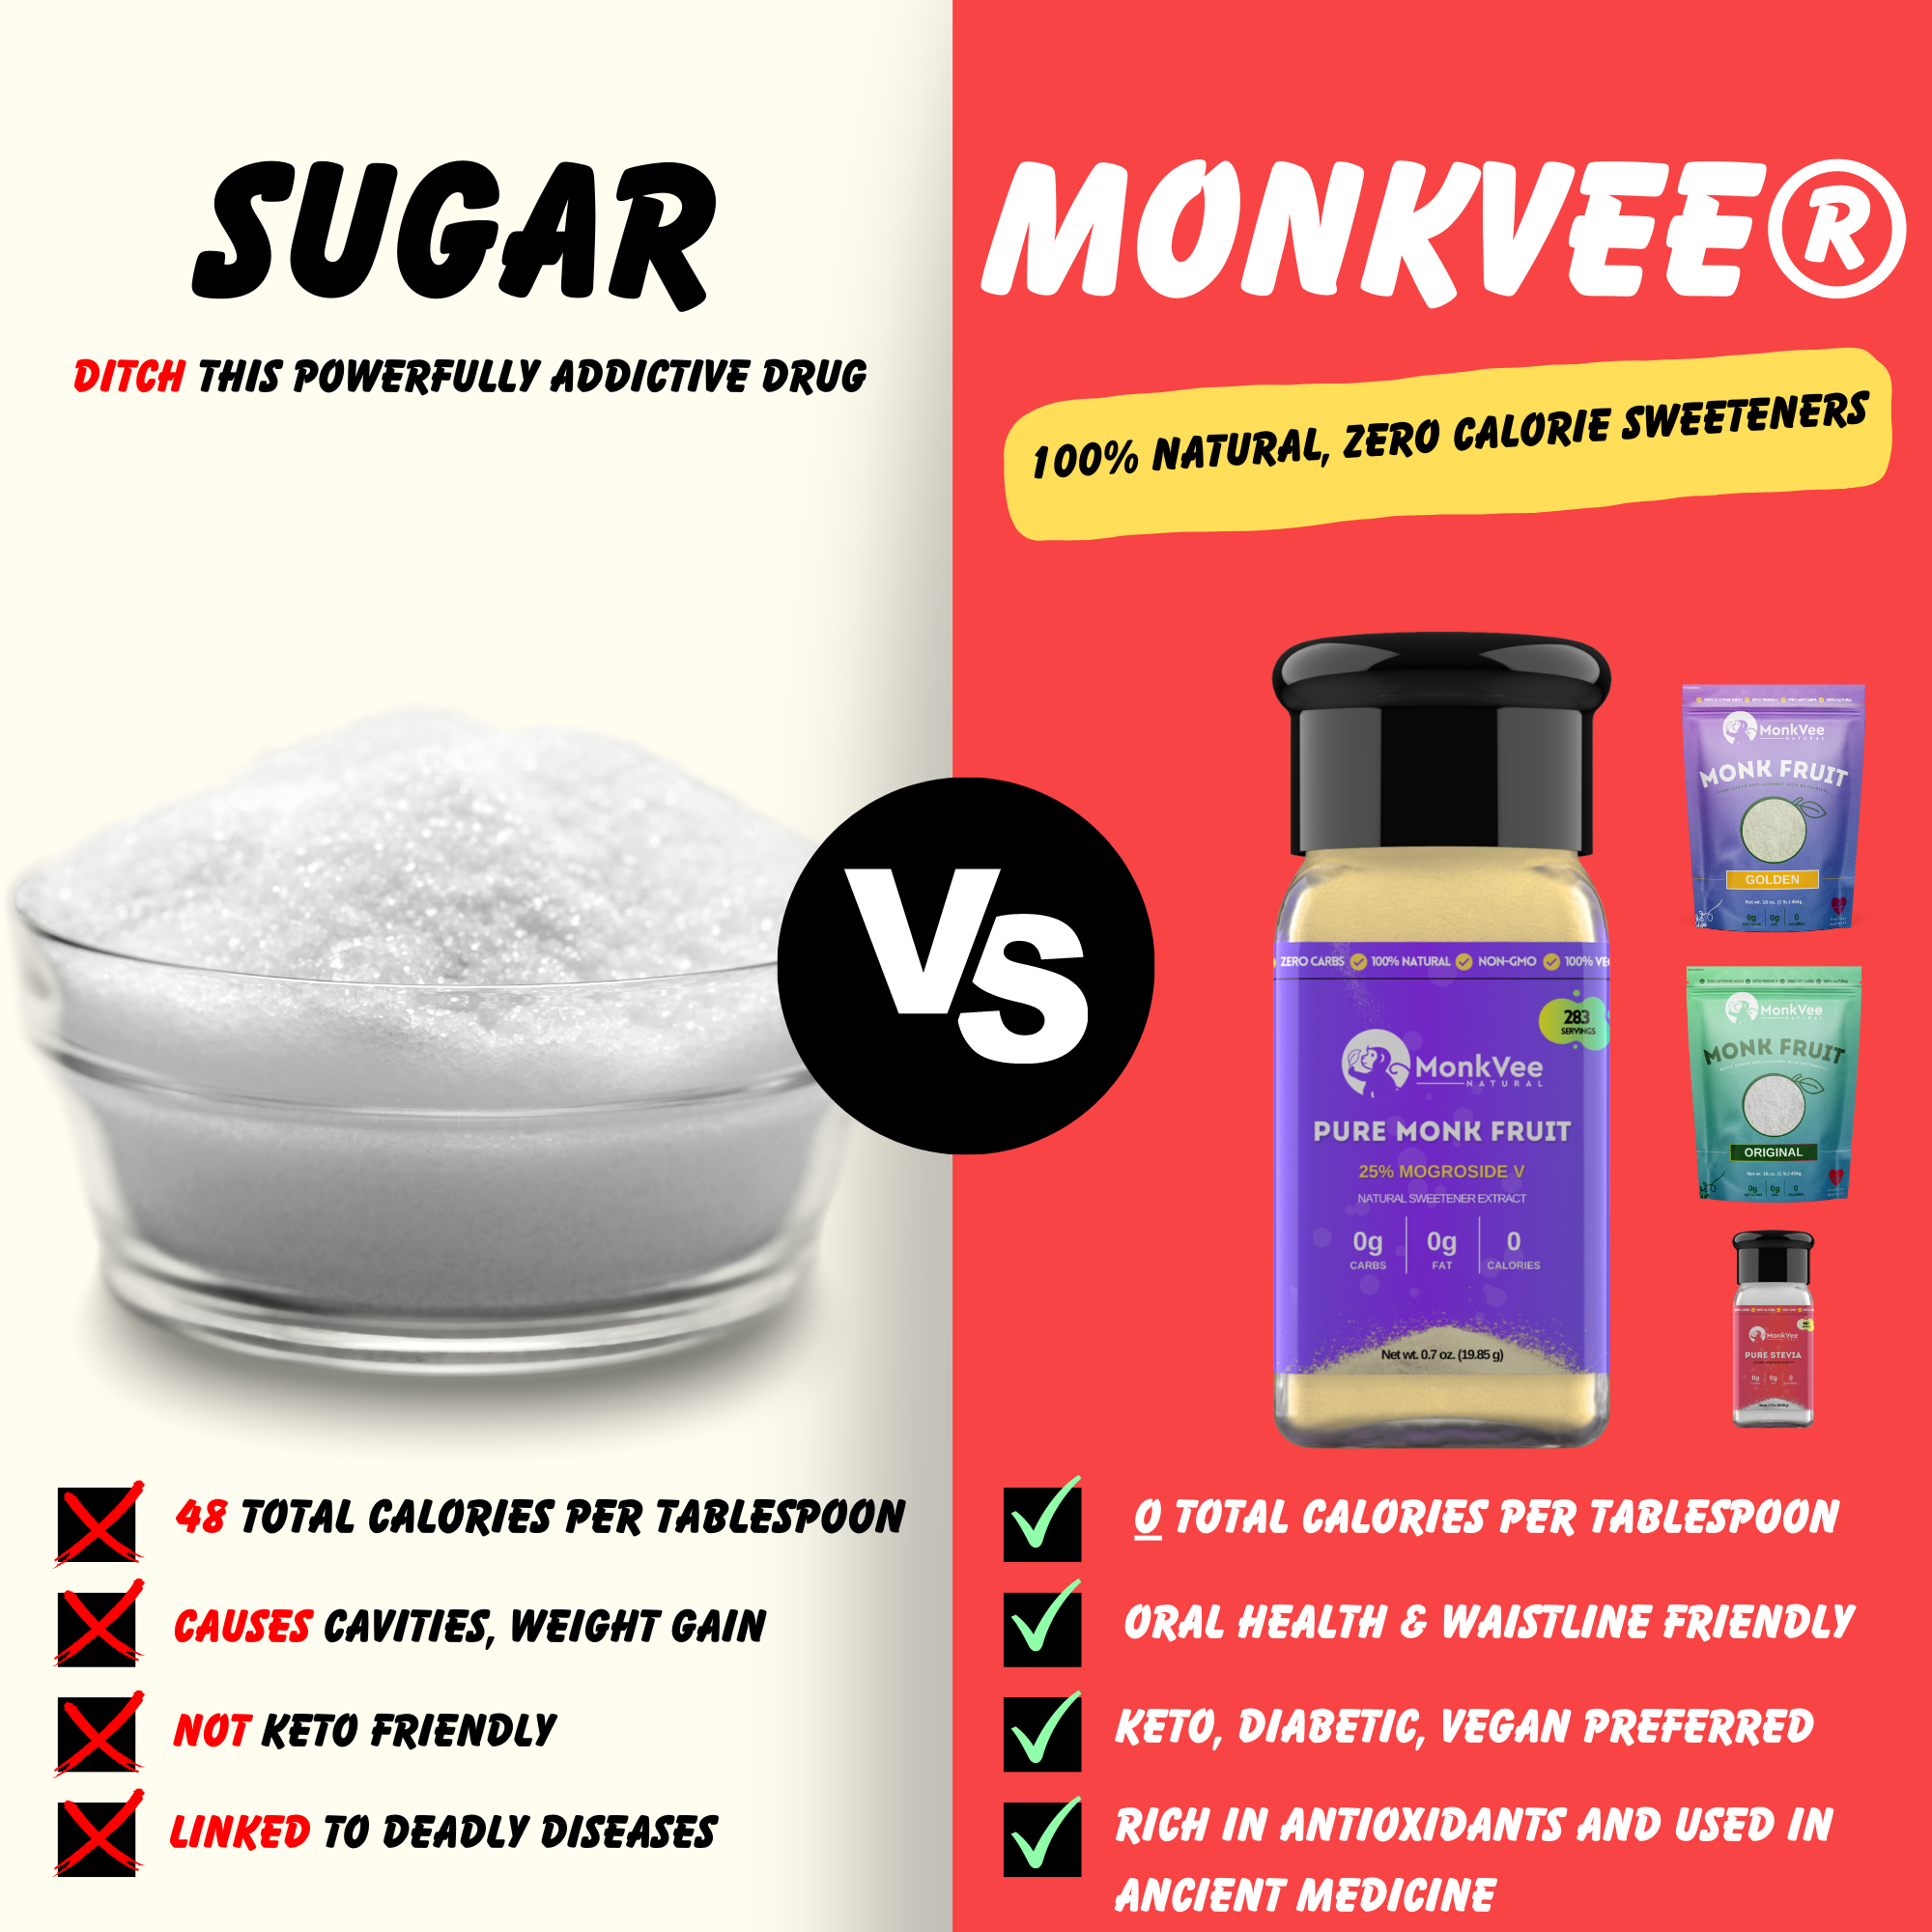 MonkVee® Pure Stevia Leaf Extract